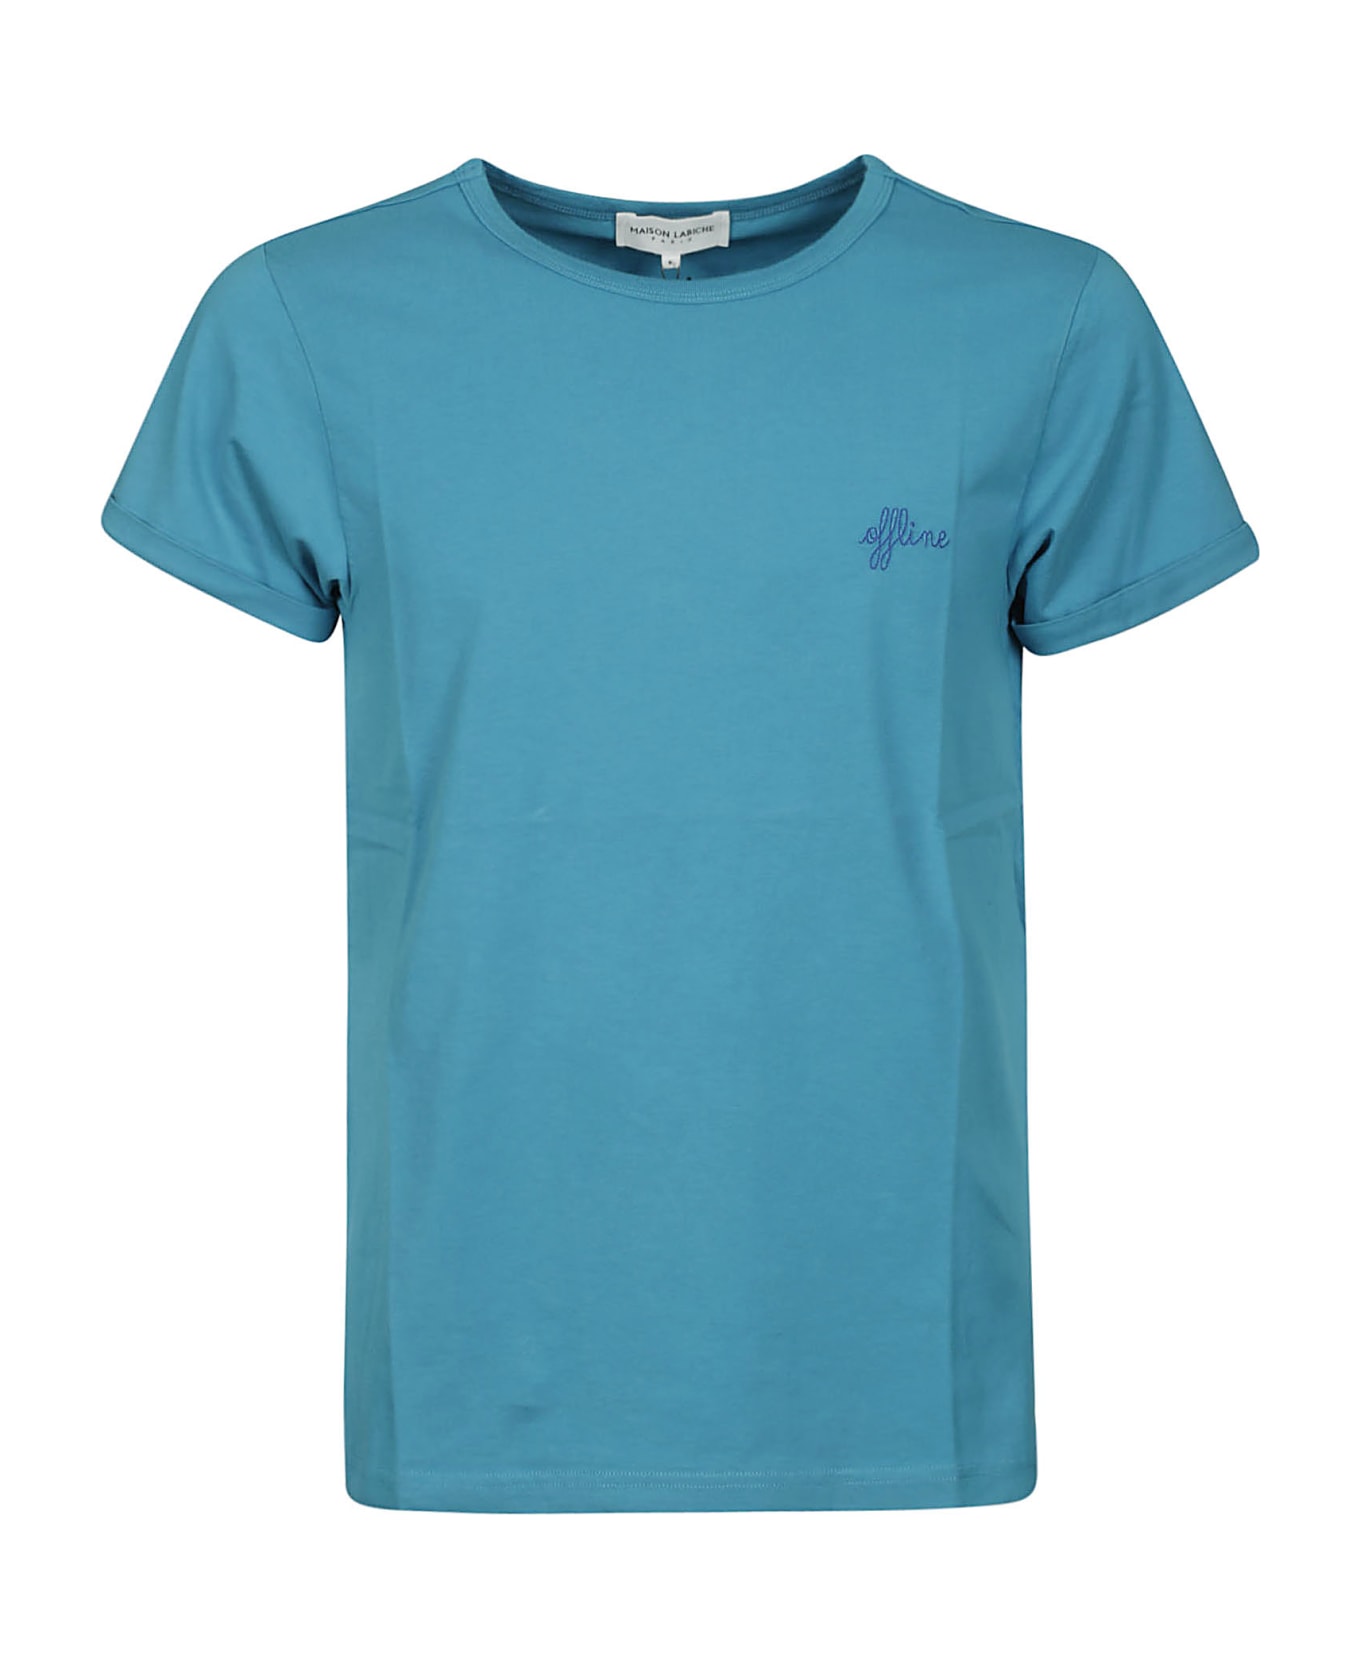 Maison Labiche Tee-shirt Poitou Offline/gots - Turquoise